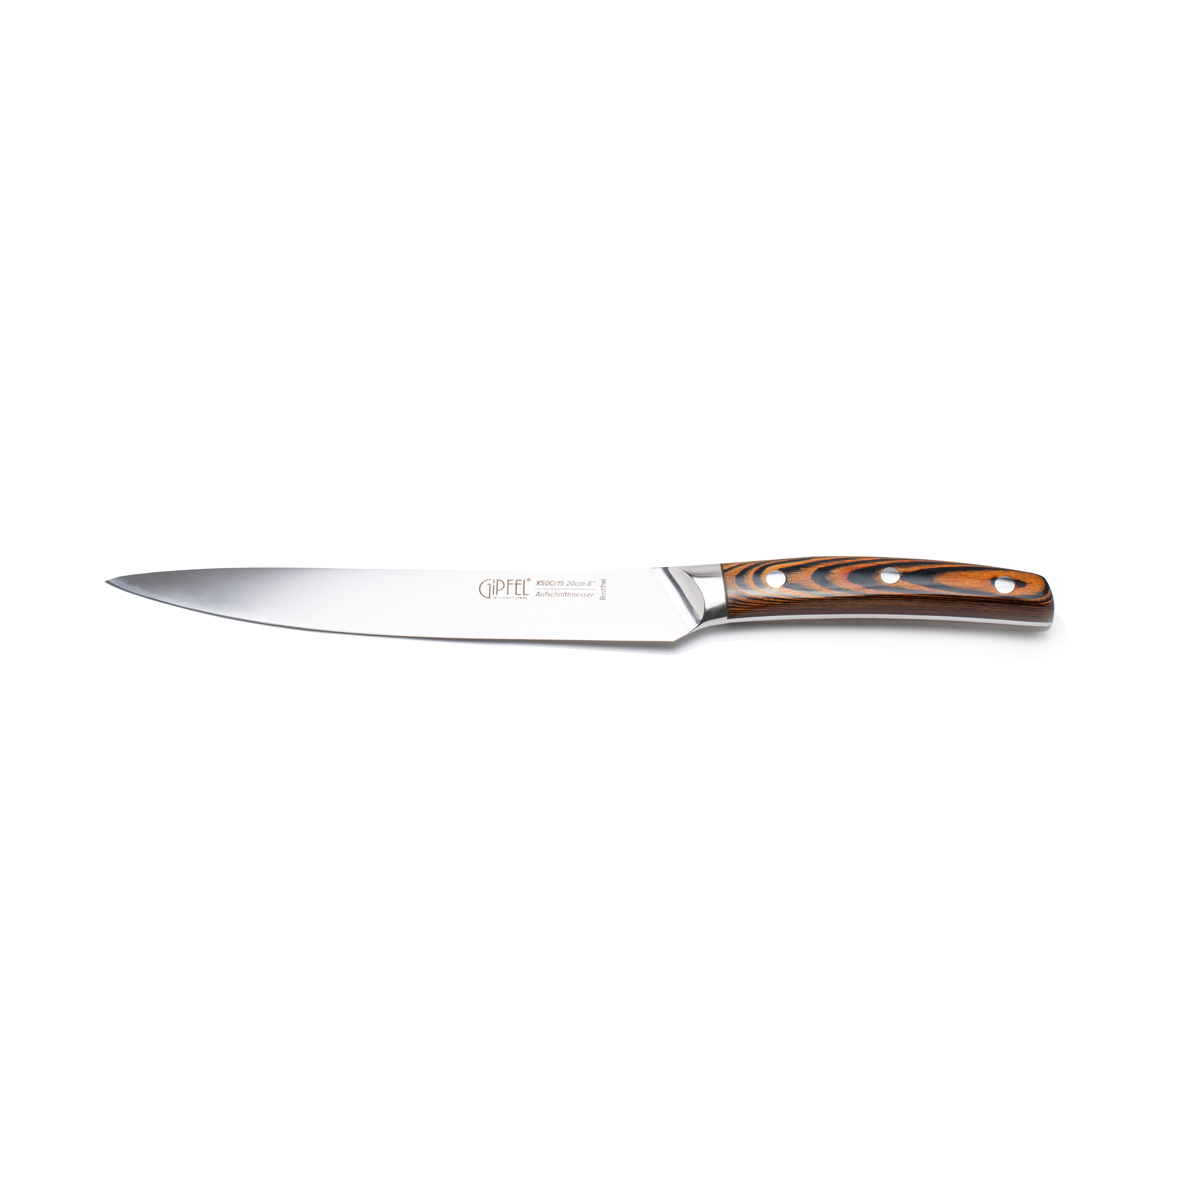 Нож разделочный Gipfel Tiger 6975, цвет деревянный